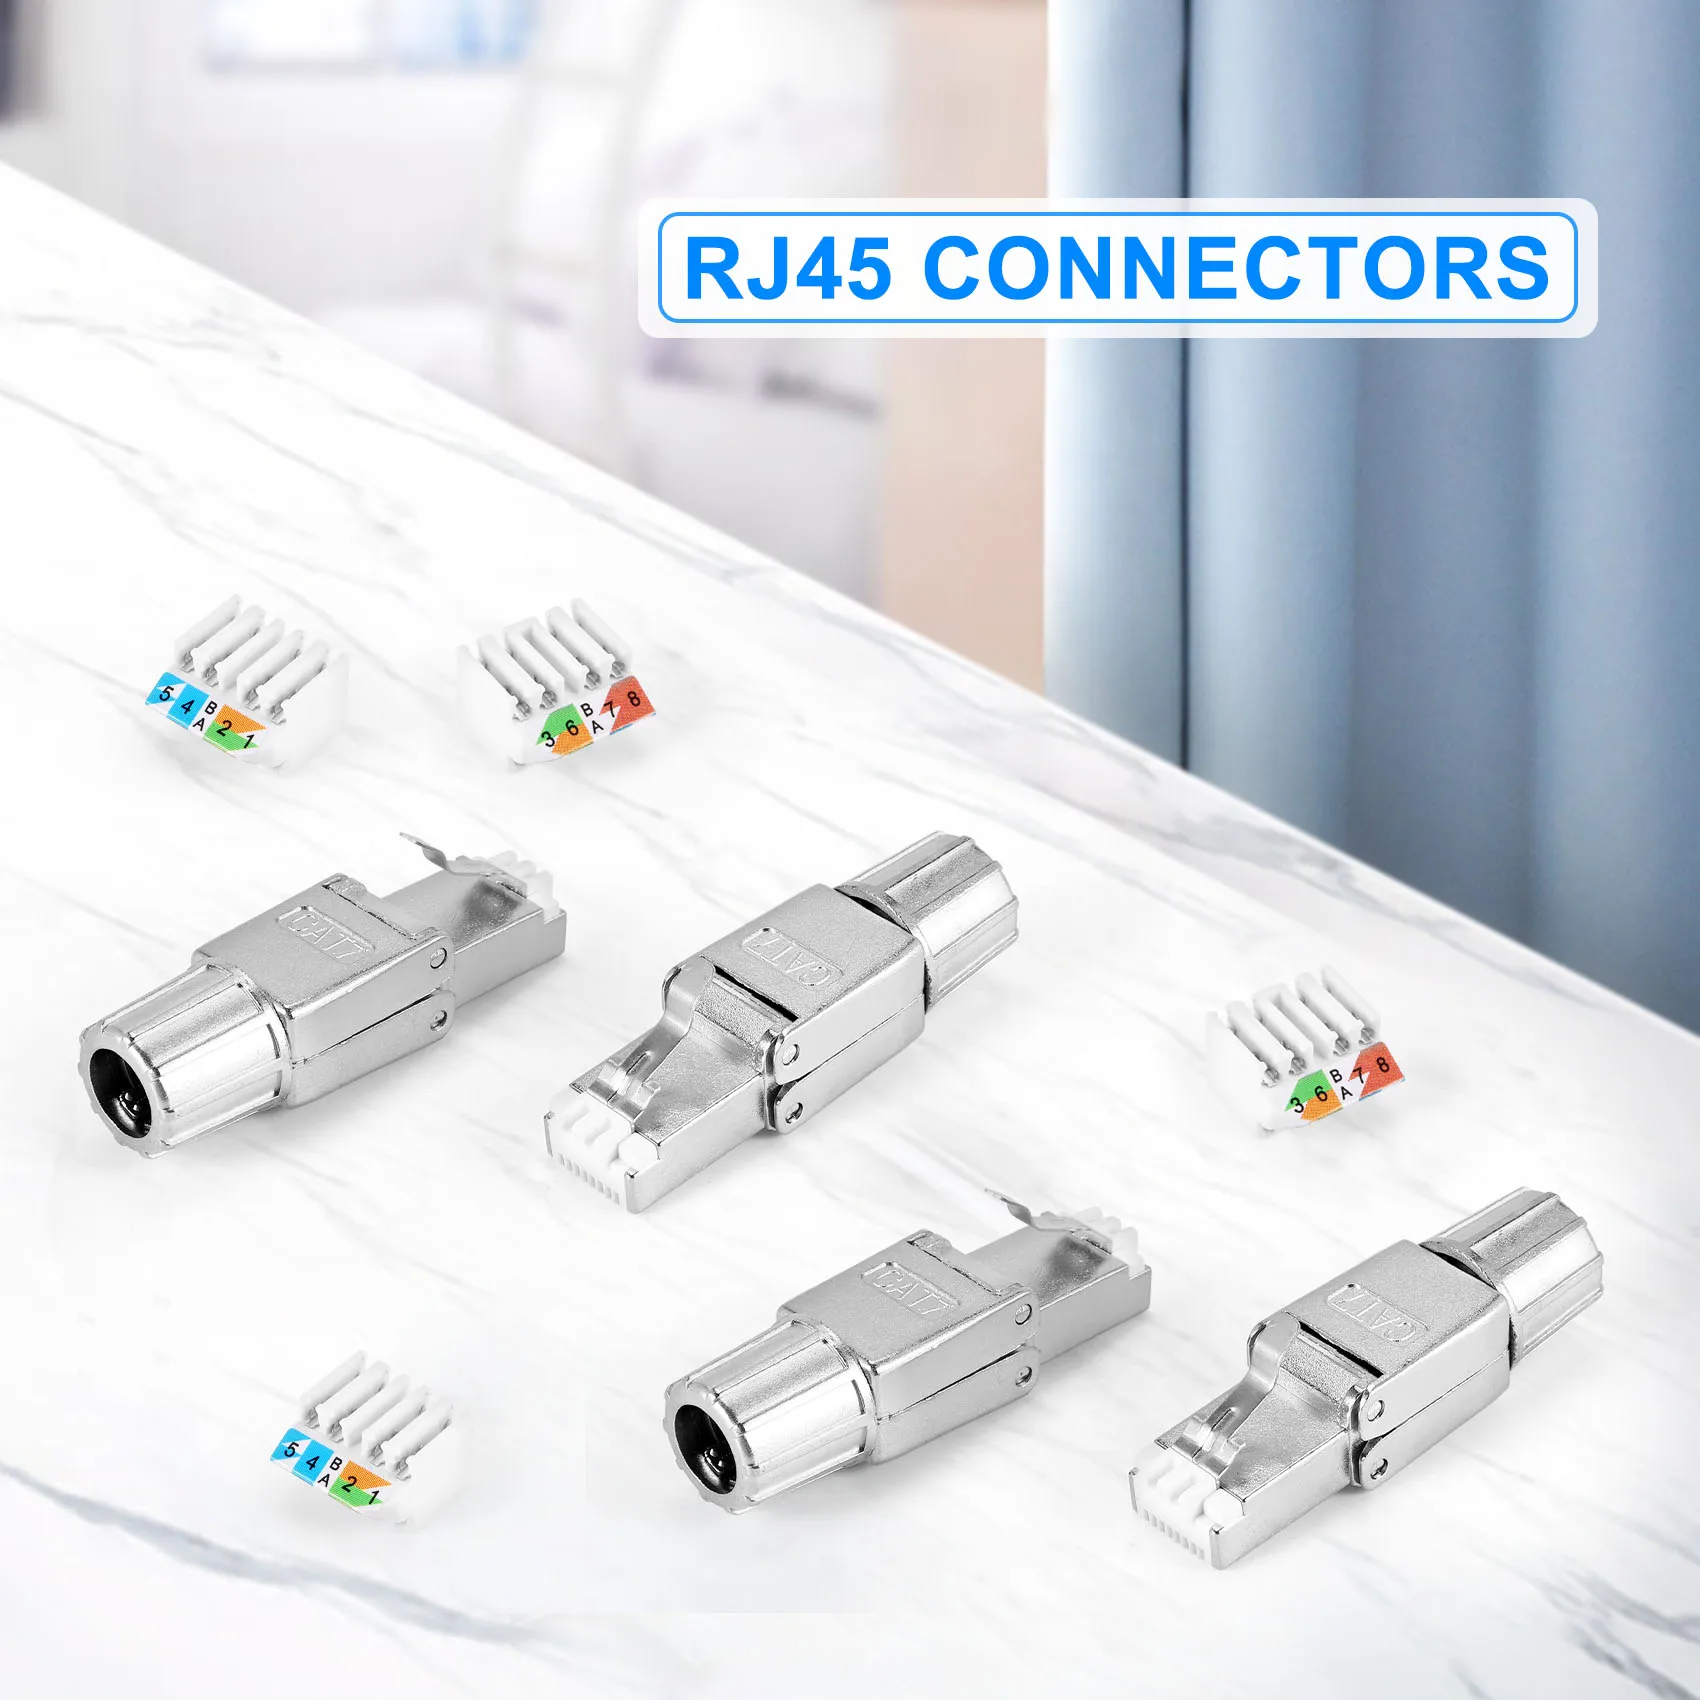 Съединители RJ-45 Cat7, за Многократна употреба екранирани конектори Ethernet, Интернет-щекер, бърз монтаж в полеви условия.